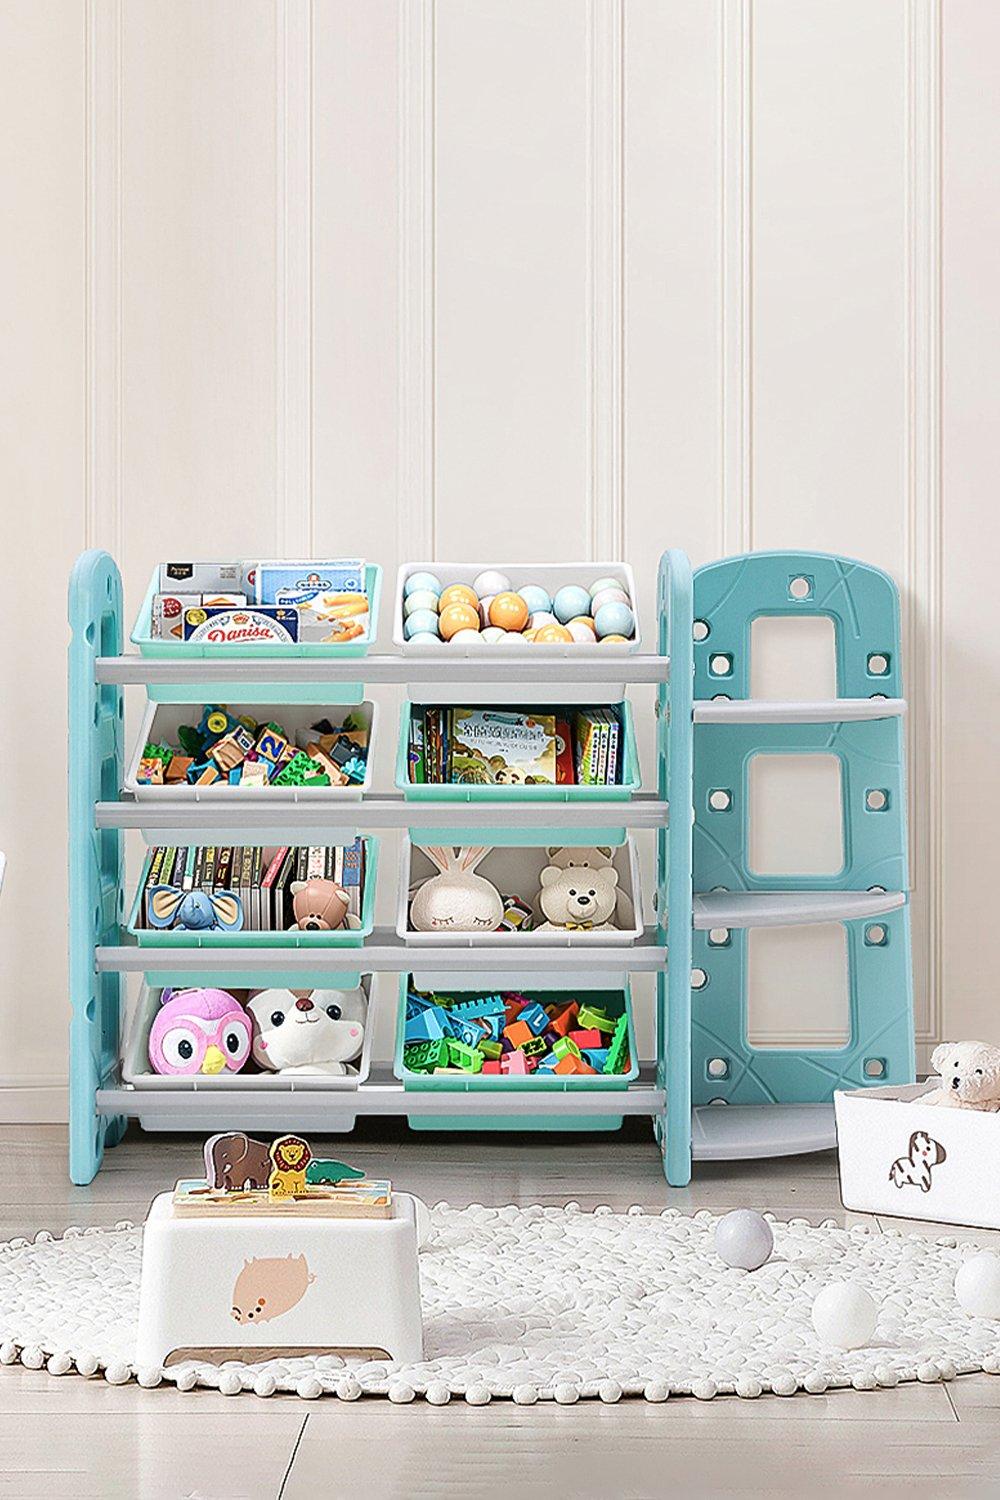 8 Toy Storage Bins Organizer with 3 Tier Corner Shelf